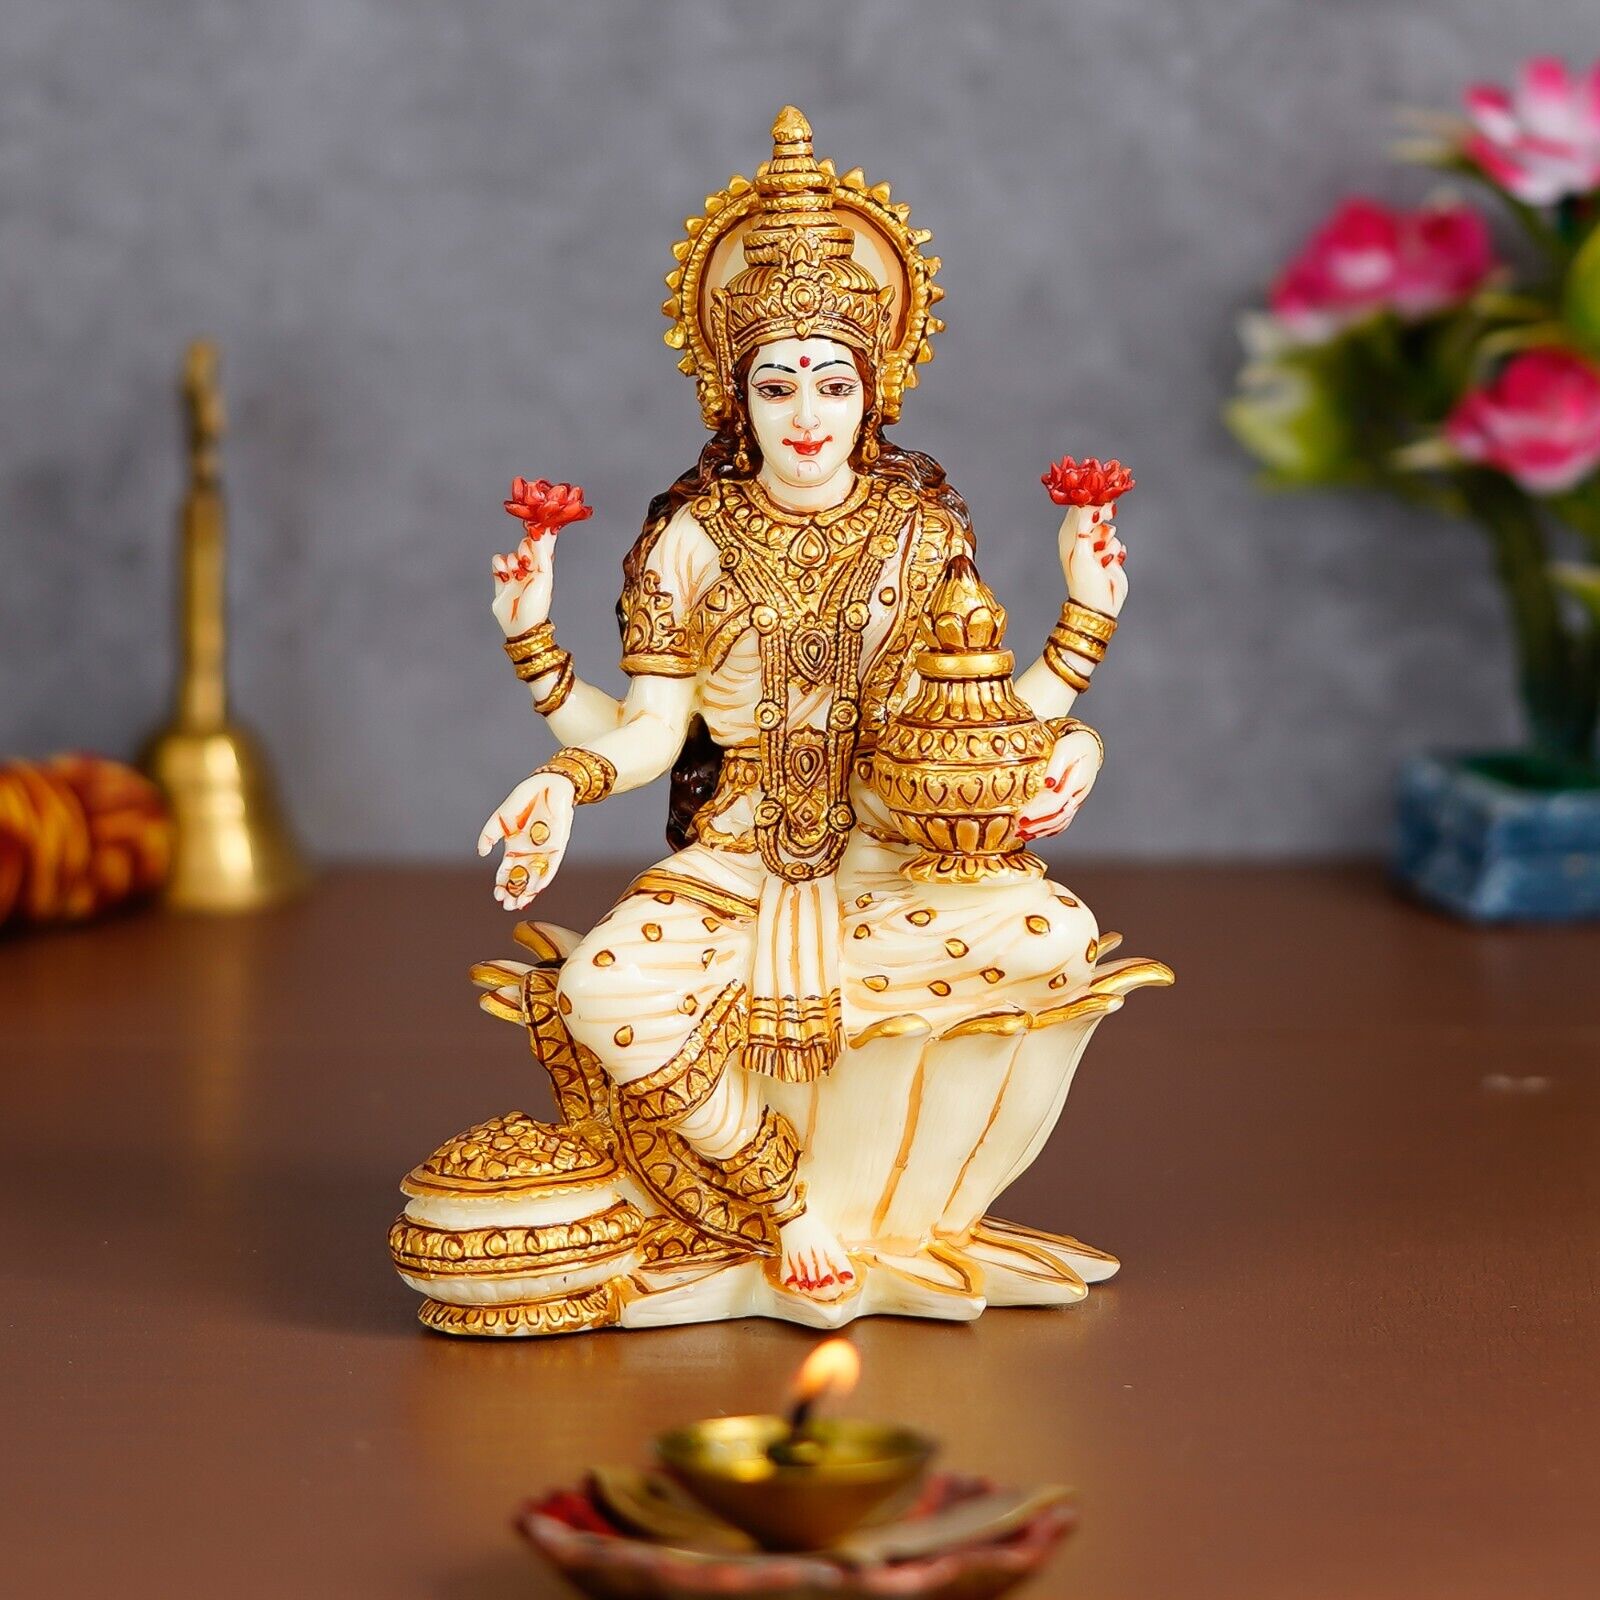 Hindu Goddess Devi Laxmi Sitting On Lotus Figurine Maa Lakshmi Sculpture Statue